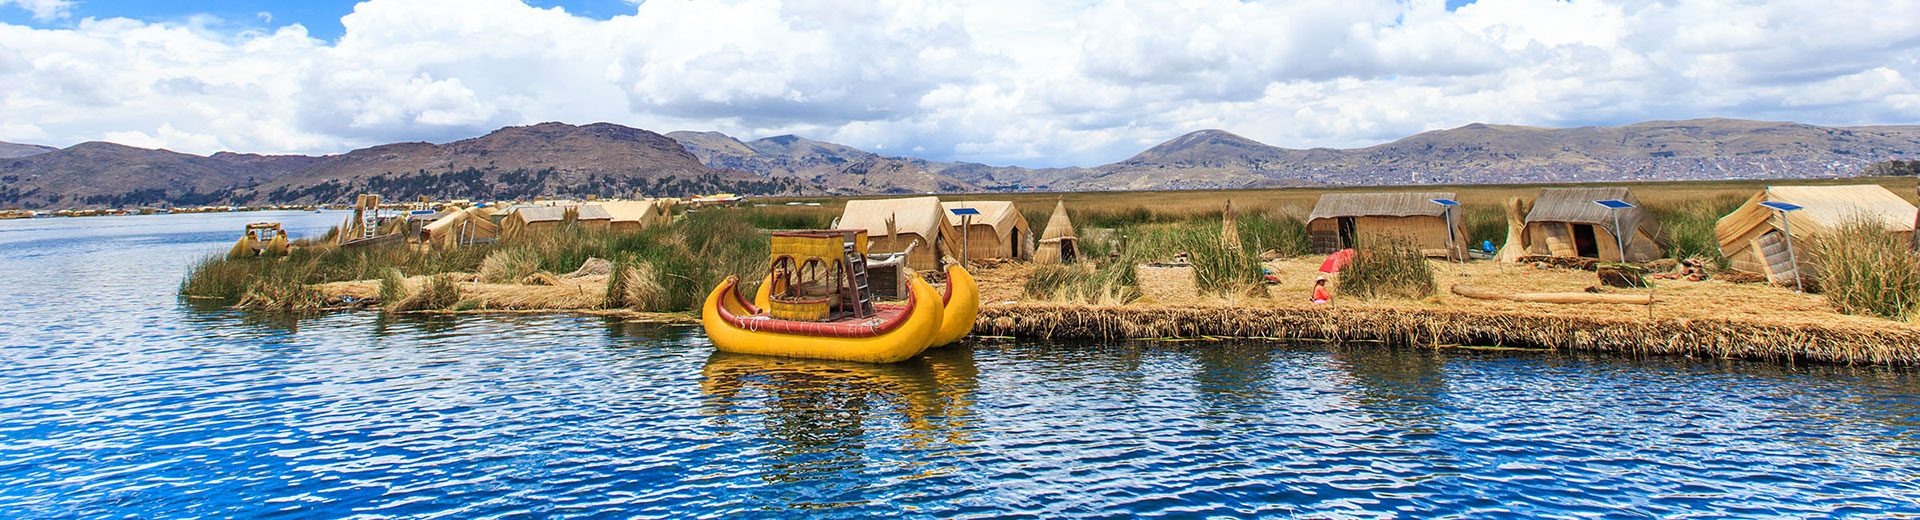 Tudo sobre o lago titicaca: Passeio incríveis